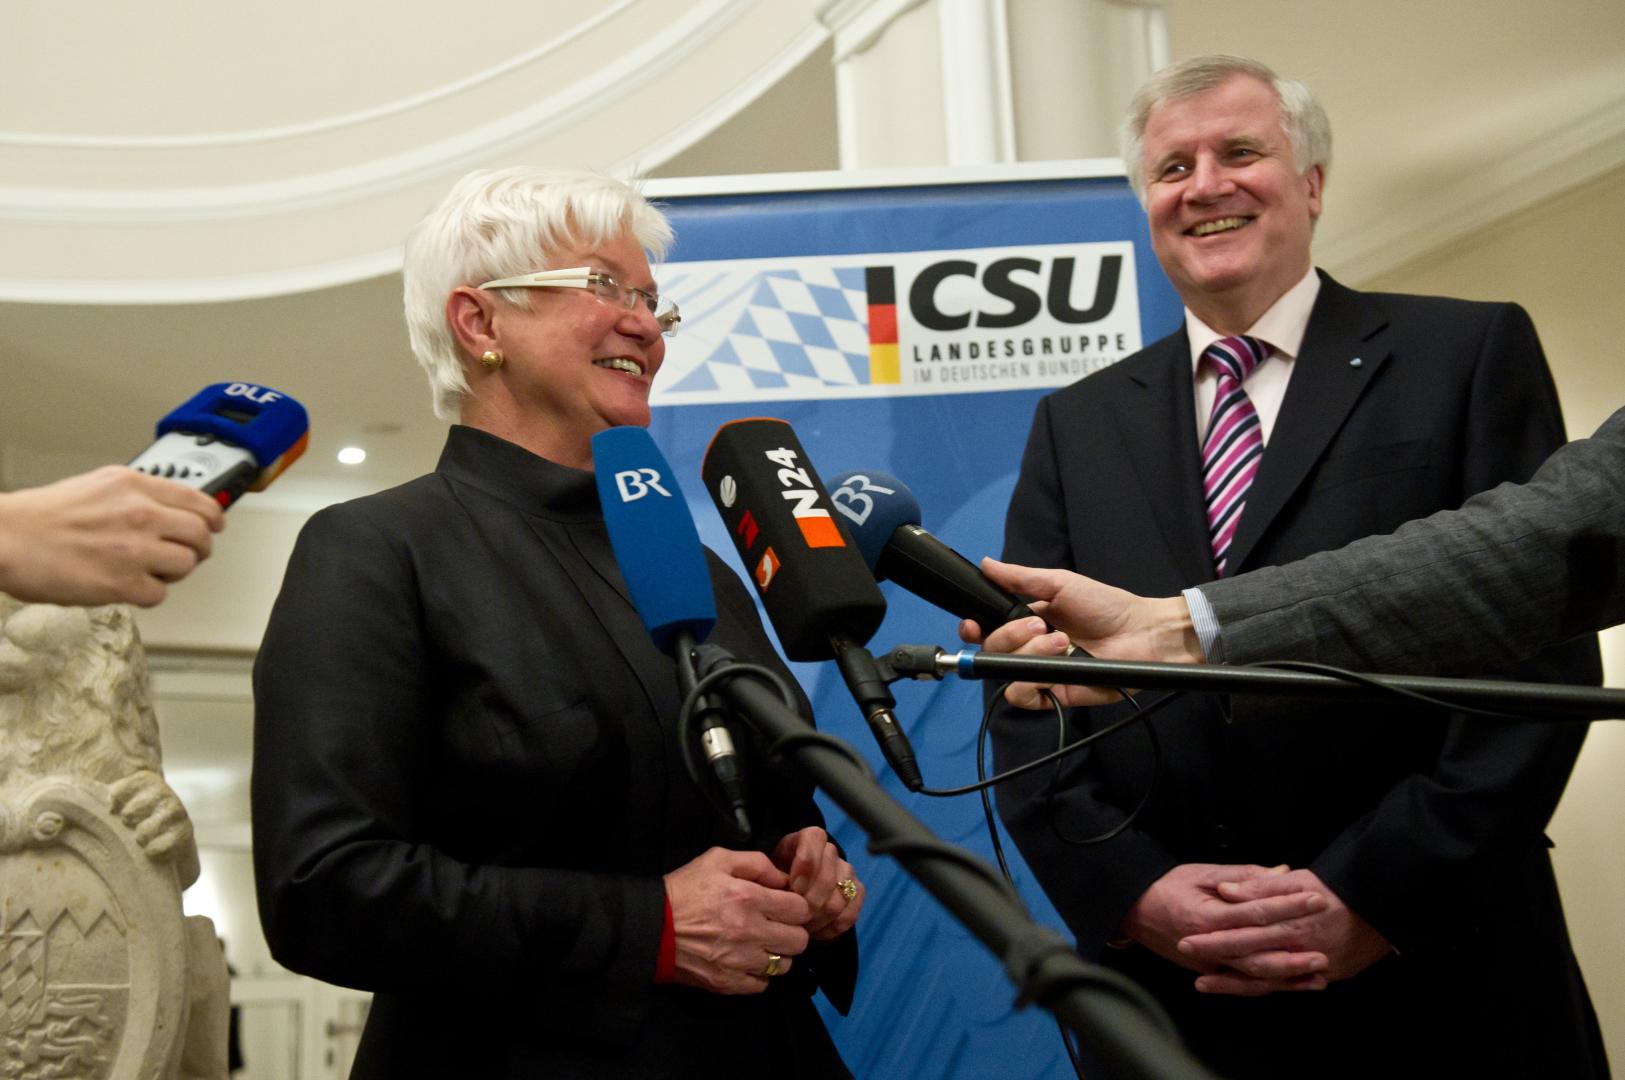 Die neu gewählte Vorsitzende der CSU-Landesgruppe im Bundestag, Gerda Hasselfeldt, gibt am Montag, de, 14. März 2011, in Berlin in der Bayerischen Landesvertretung neben Parteichef Horst Seehofer (r.) ein Statement.